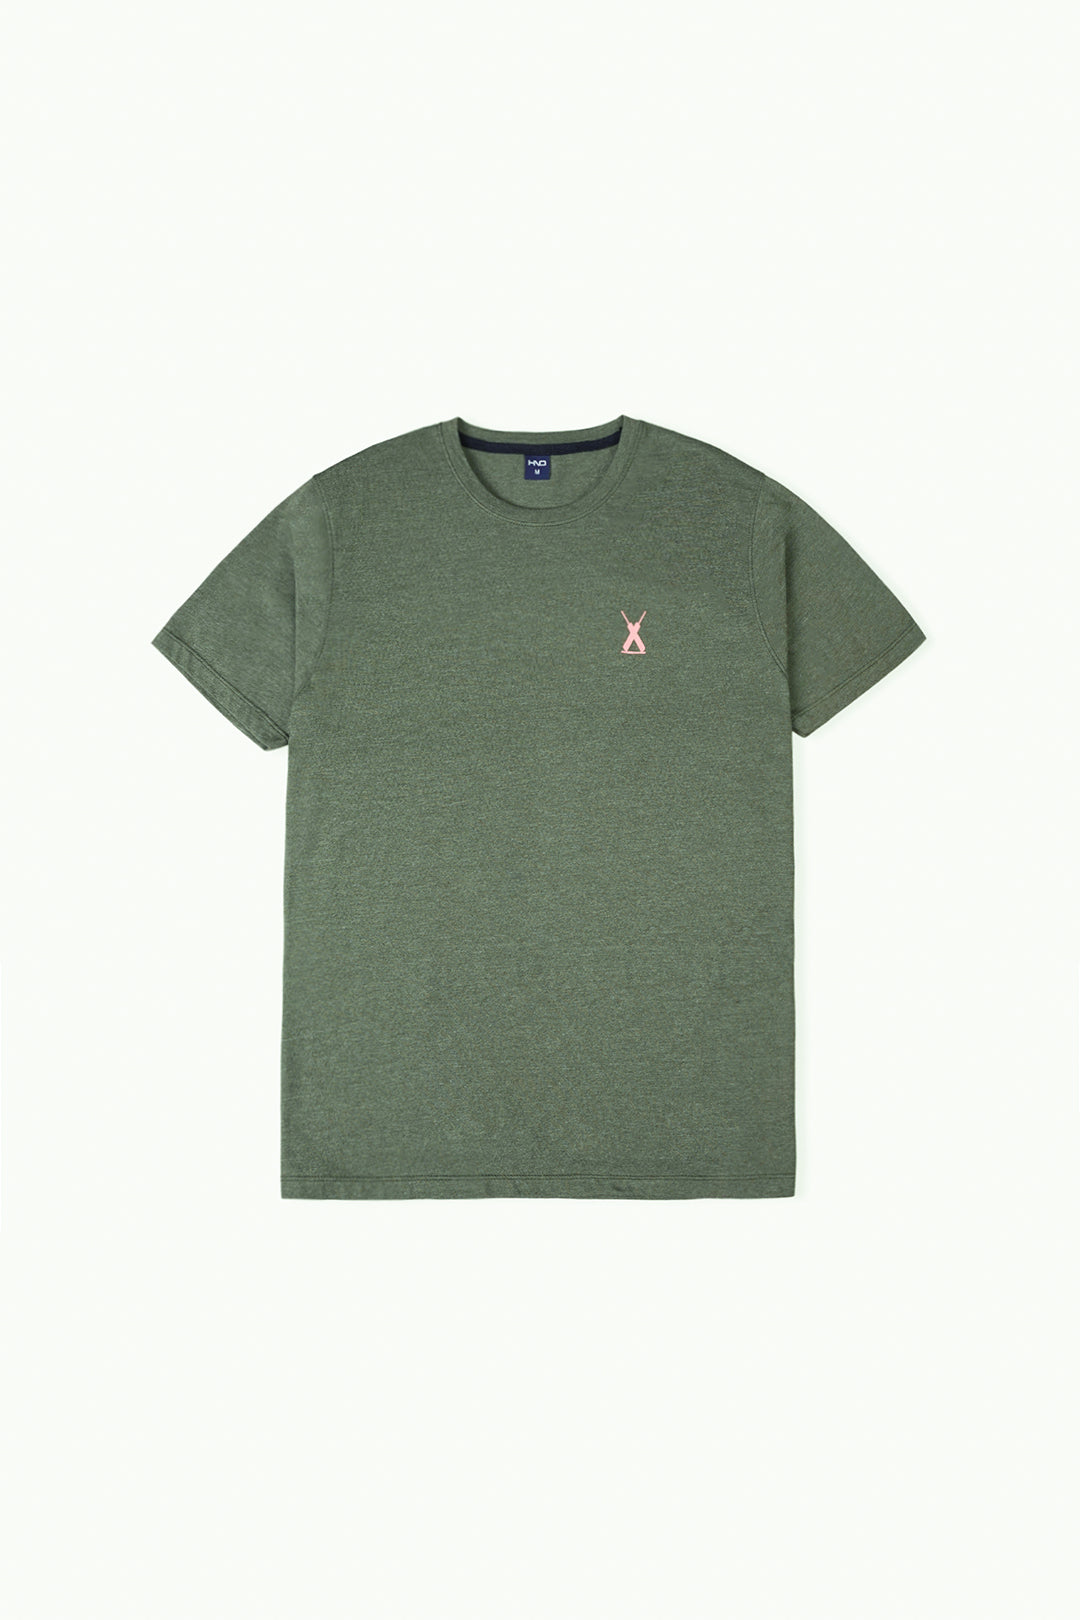 Olive Green Men's Basic T-Shirt